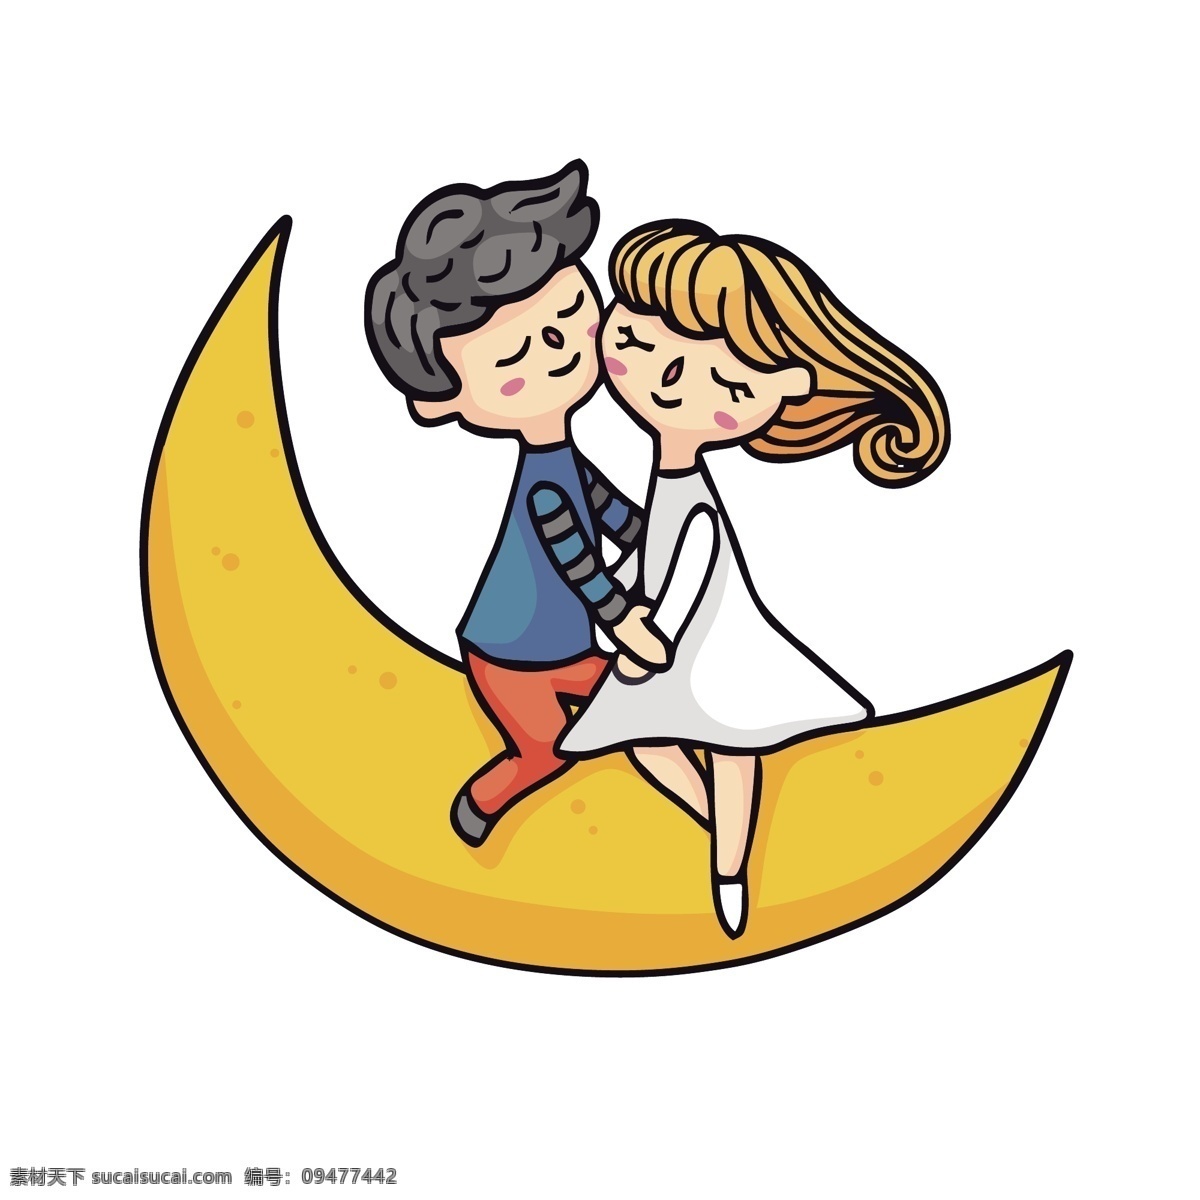 卡通 手绘 月亮 上 情侣 矢量 黄色 黄色月亮 手绘情侣 卡通情侣 男孩 女孩 可爱情侣 浪漫